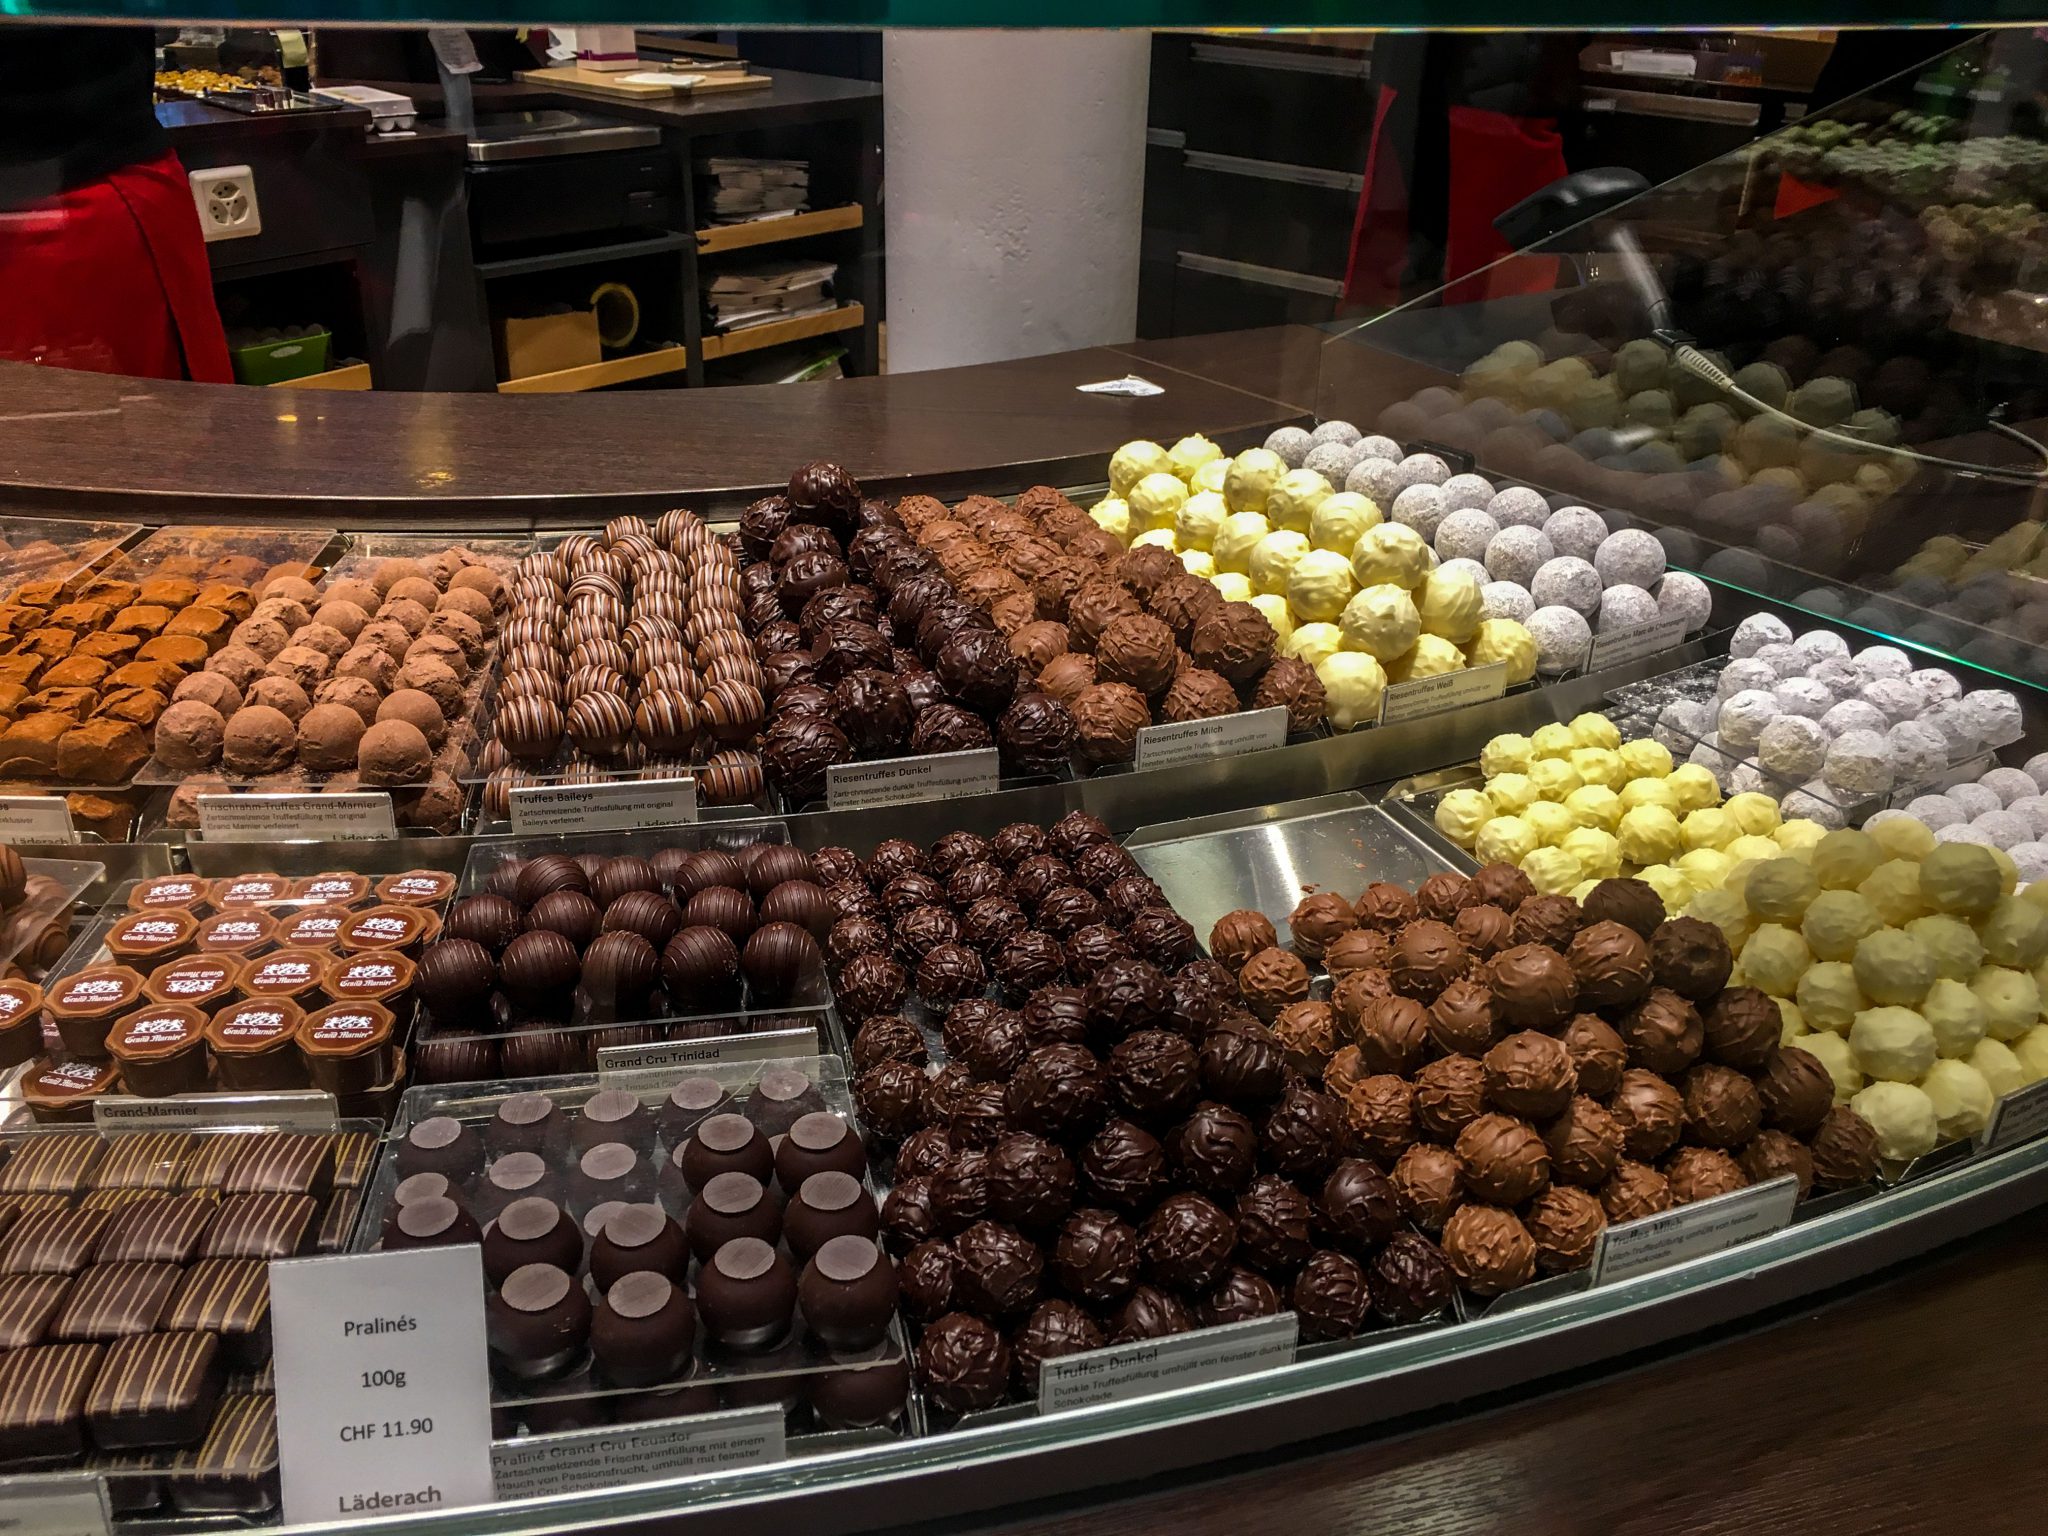 Interlaken- Laderach chocolates